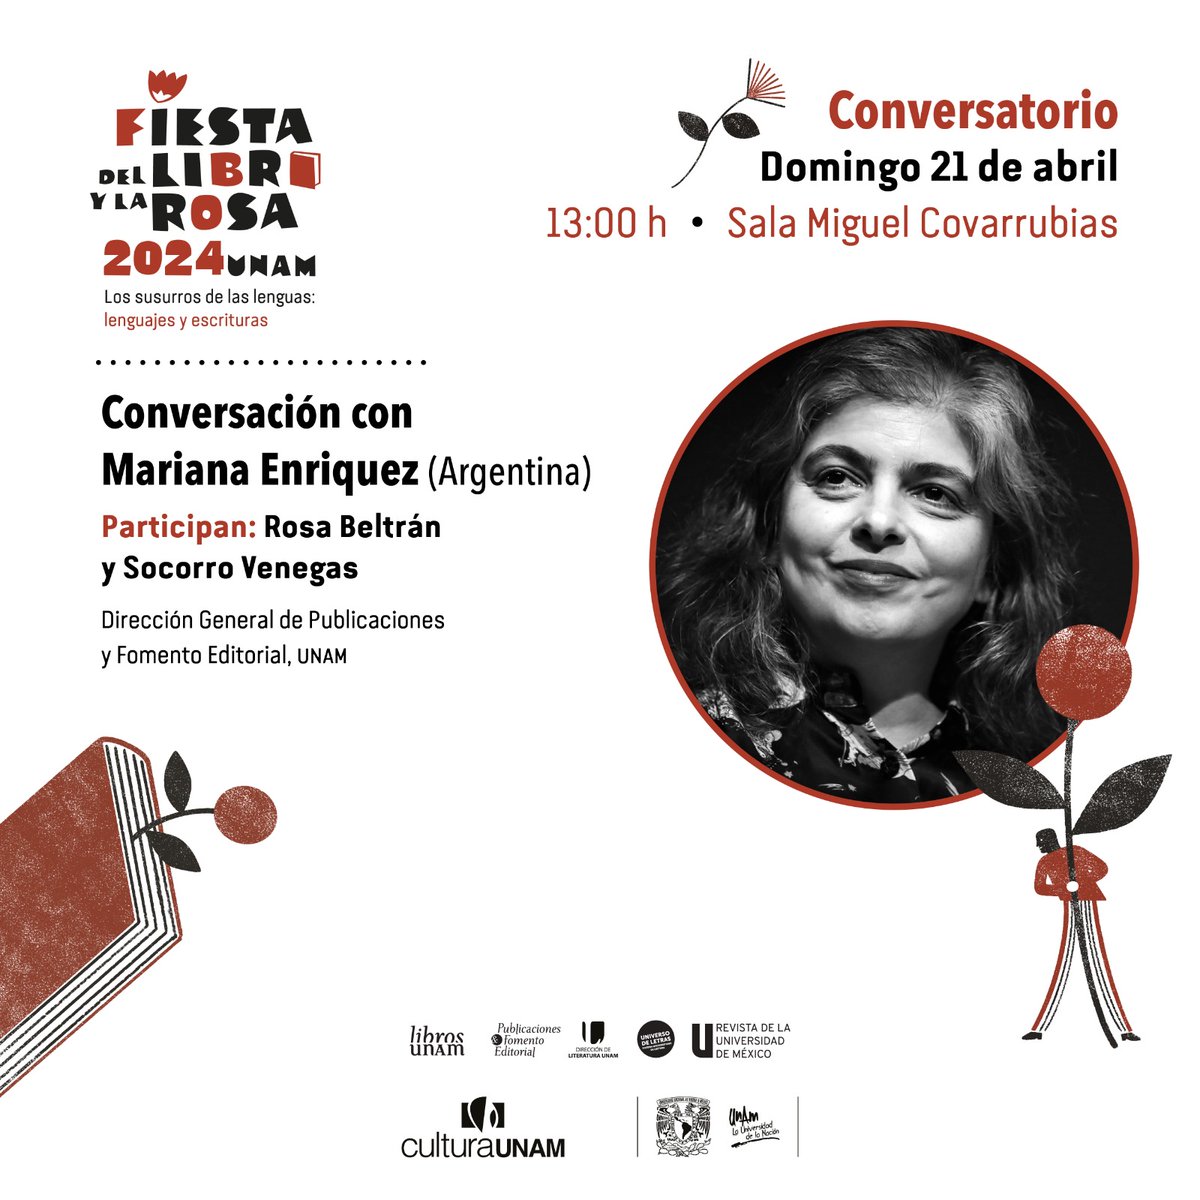 🤩¡Este 21 de abril en la #FiestaLibroyRosa tendremos la presentación estelar de la escritora argentina Mariana Enriquez! 📝 Agenda el conversatorio con @RosaBeltranA y @SocorroVenegas. 📚🌹 ✨ @CulturaUNAM @AnagramaEd_mx @LiteraturaUNAM @universoUNAM @revista_unam